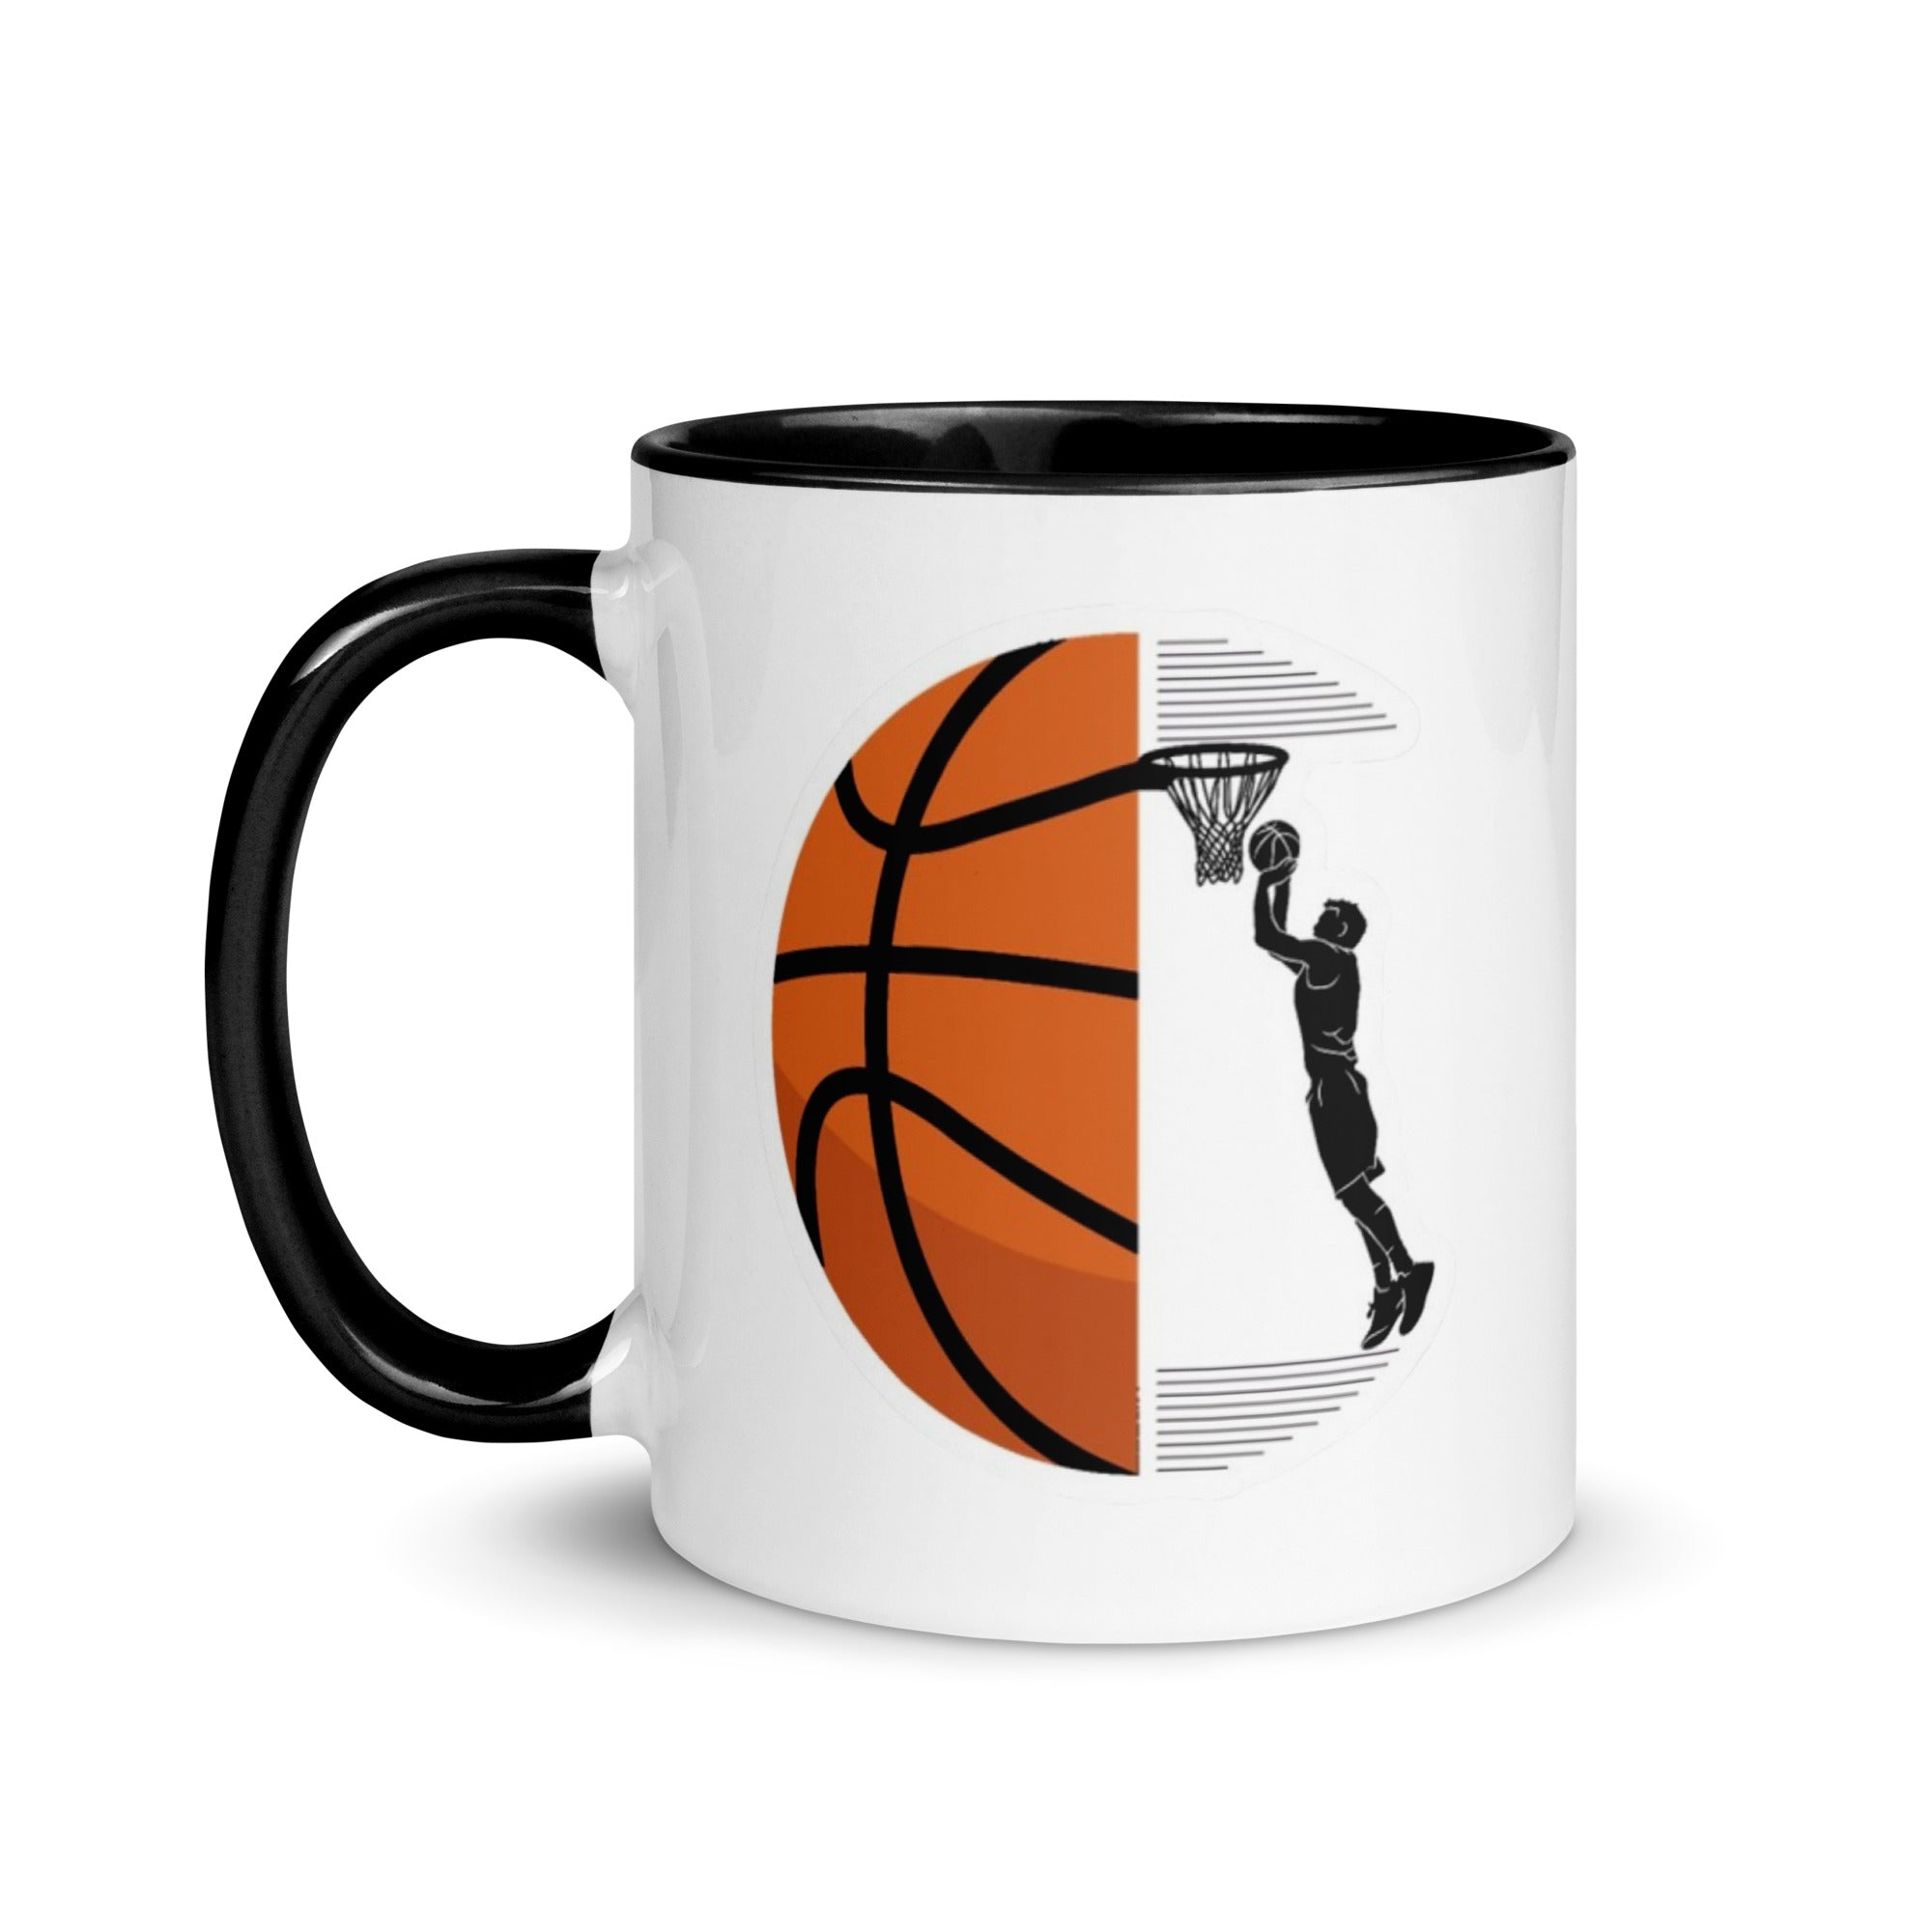 Basketball Pocket Mug with Color Inside